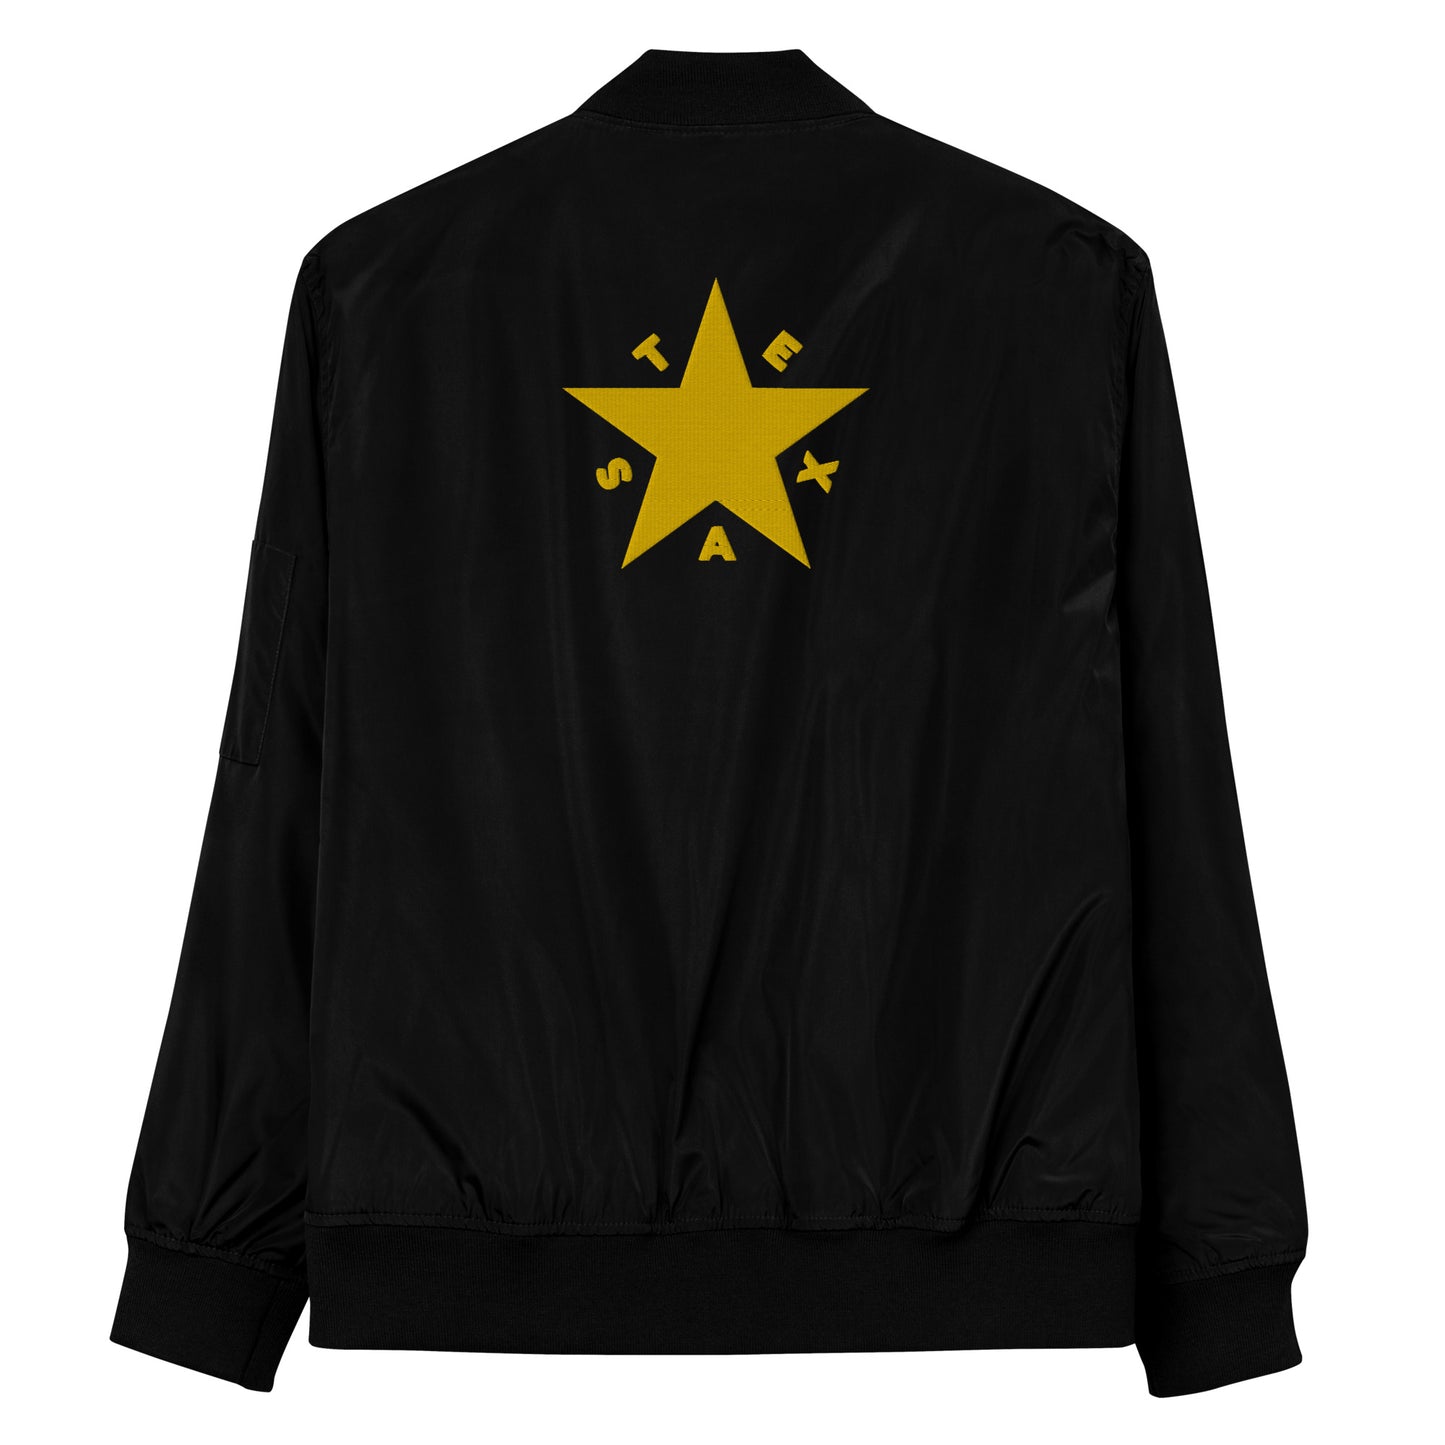 Texas Star Bomber Jacket (Gold Text)